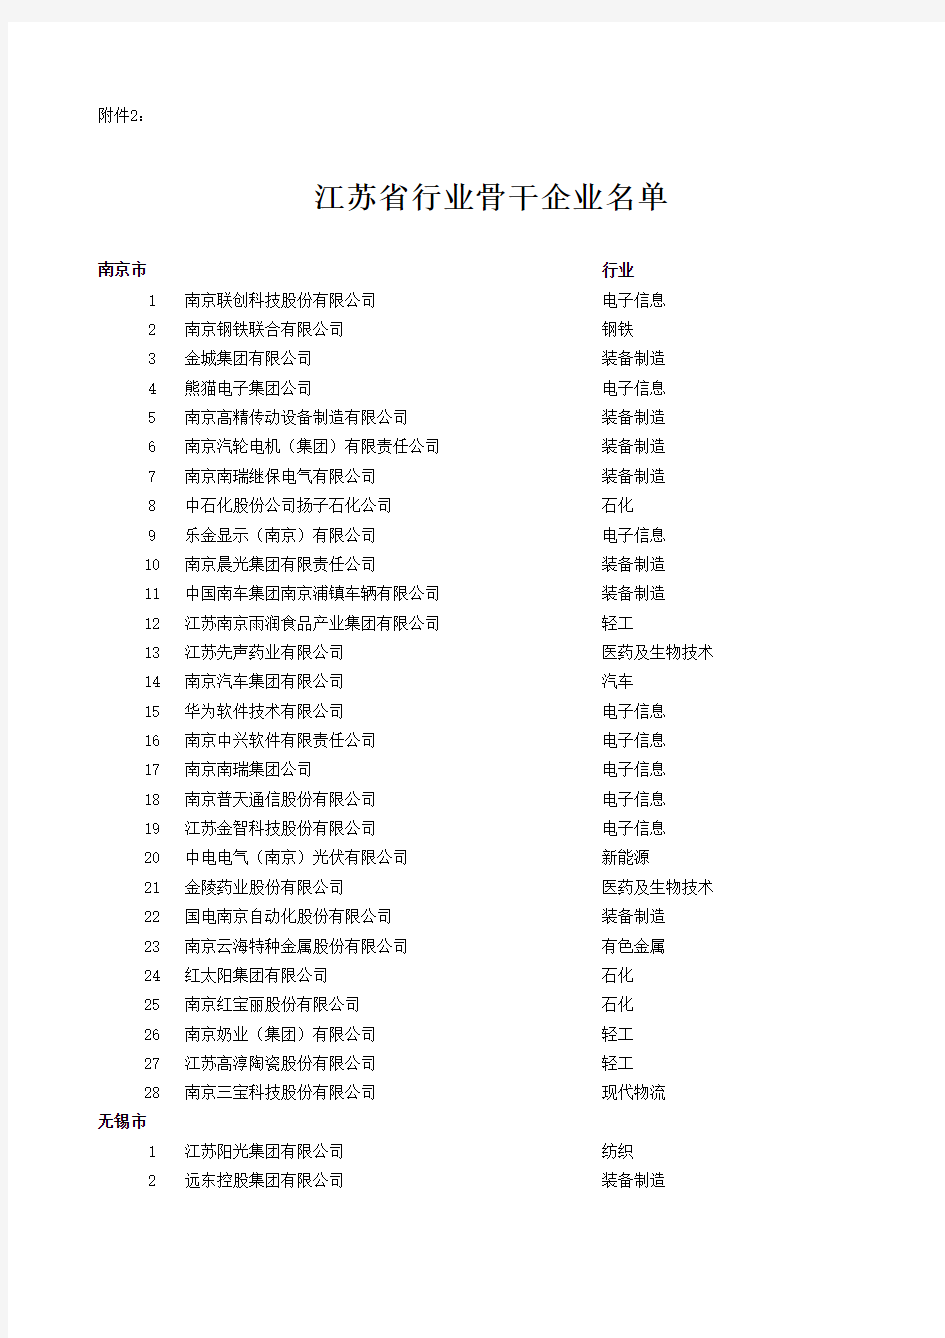 20090427024325-江苏省行业骨干企业名单